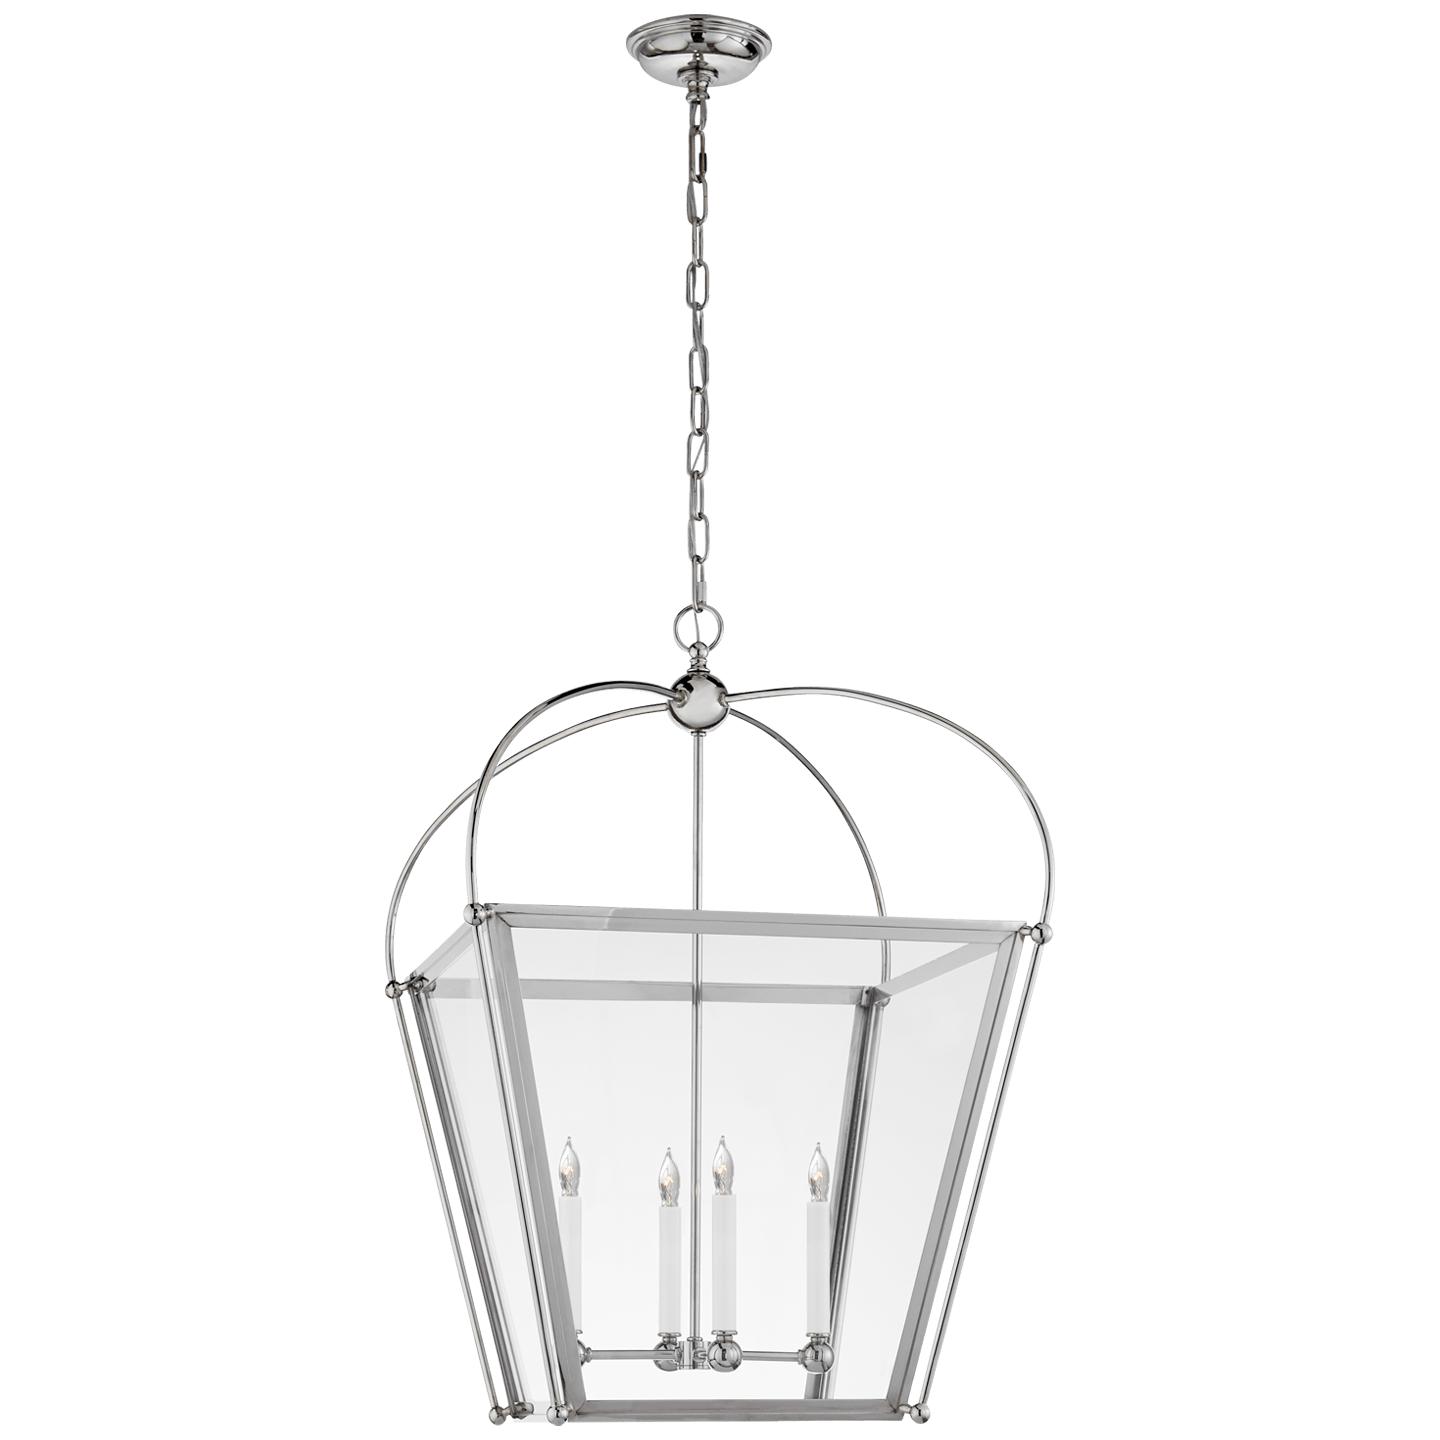 Купить Подвесной светильник Riverside Medium Square Lantern в интернет-магазине roooms.ru